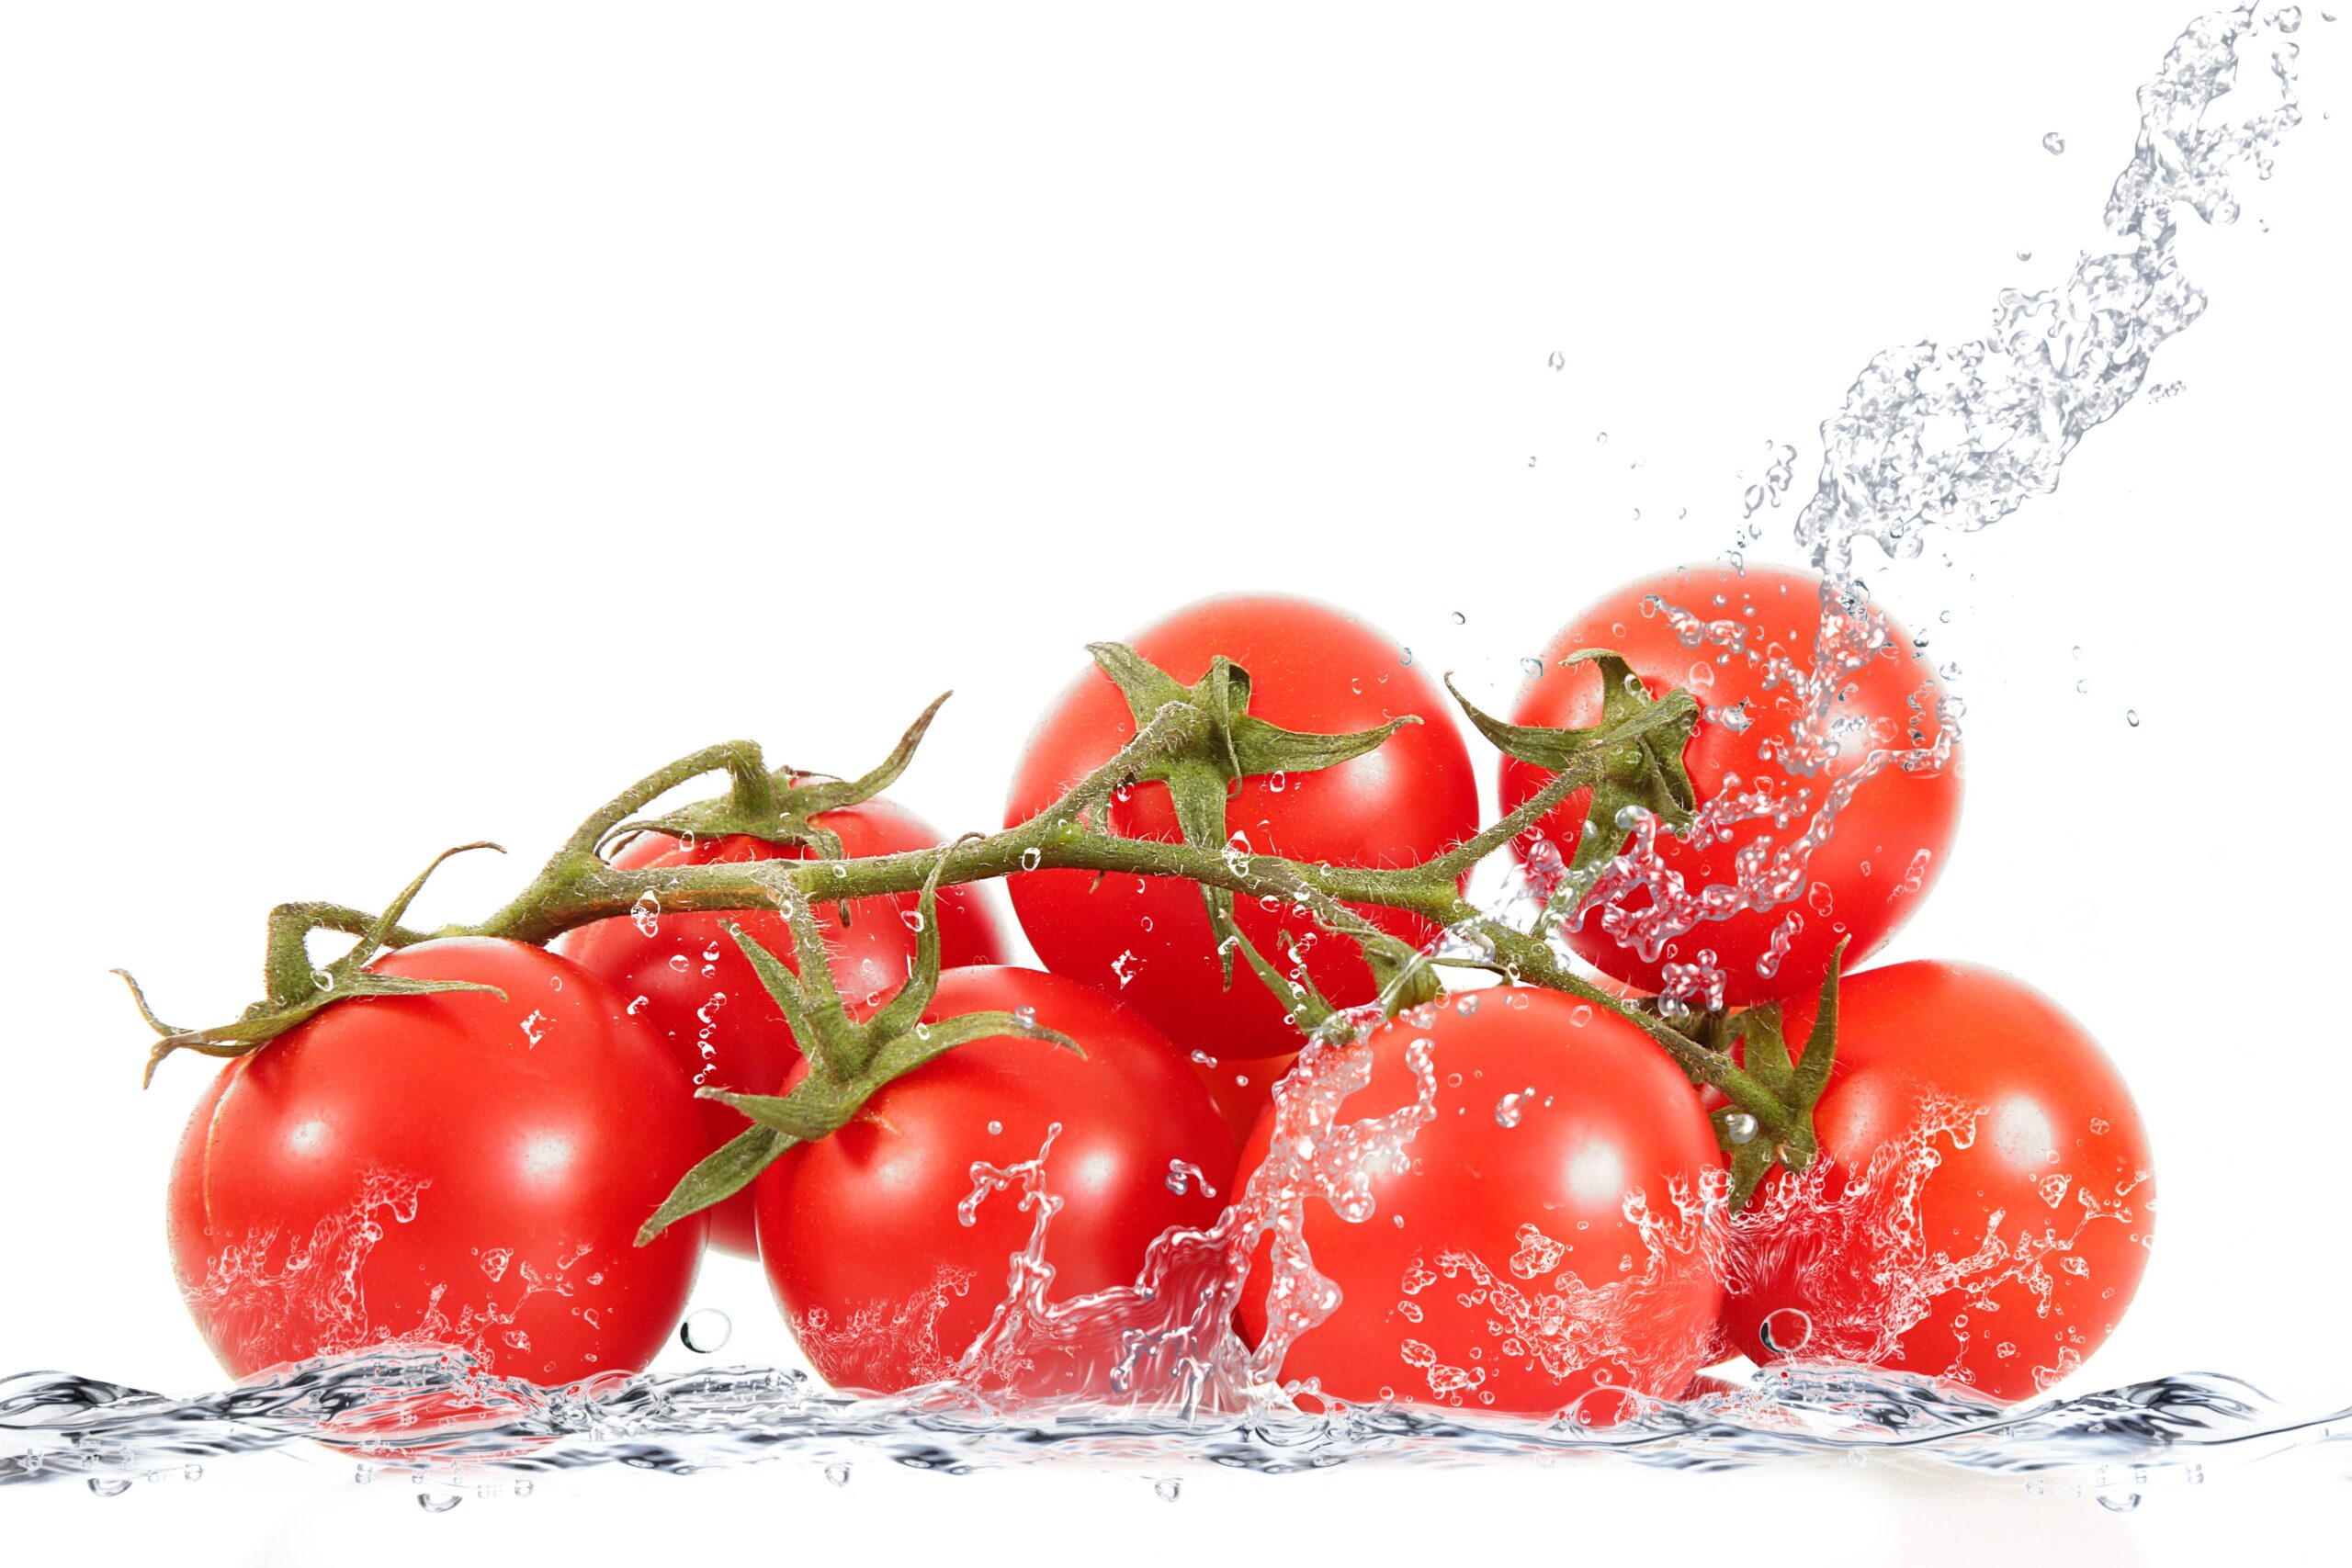 taze domates üzerine dökülen su ve su sıçratması